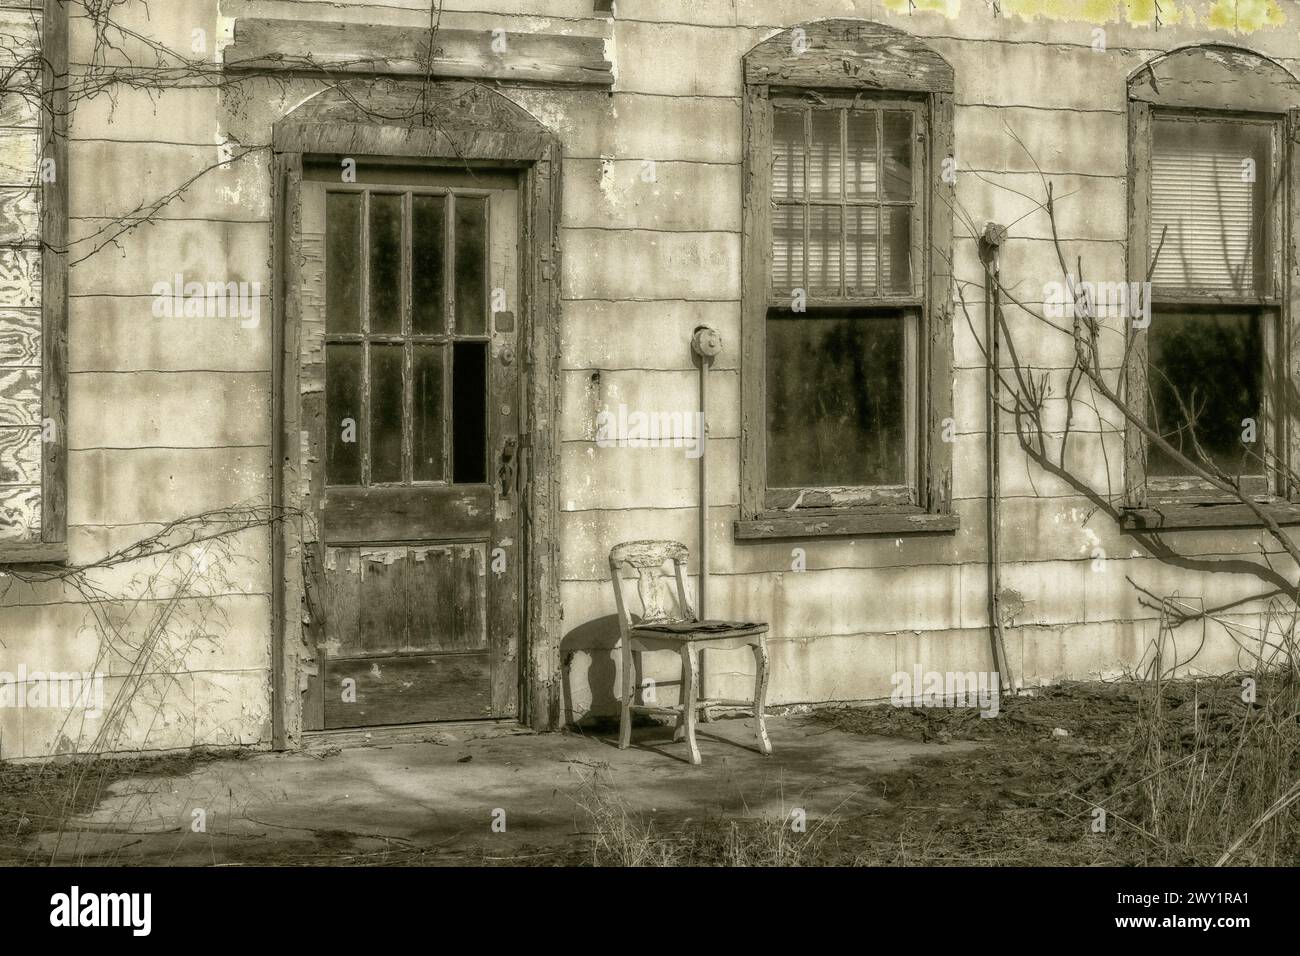 Nahaufnahme eines alten verlassenen Gebäudes, in dem ein Holzstuhl neben der Tür mit kaputten Fensterscheiben sitzt Stockfoto